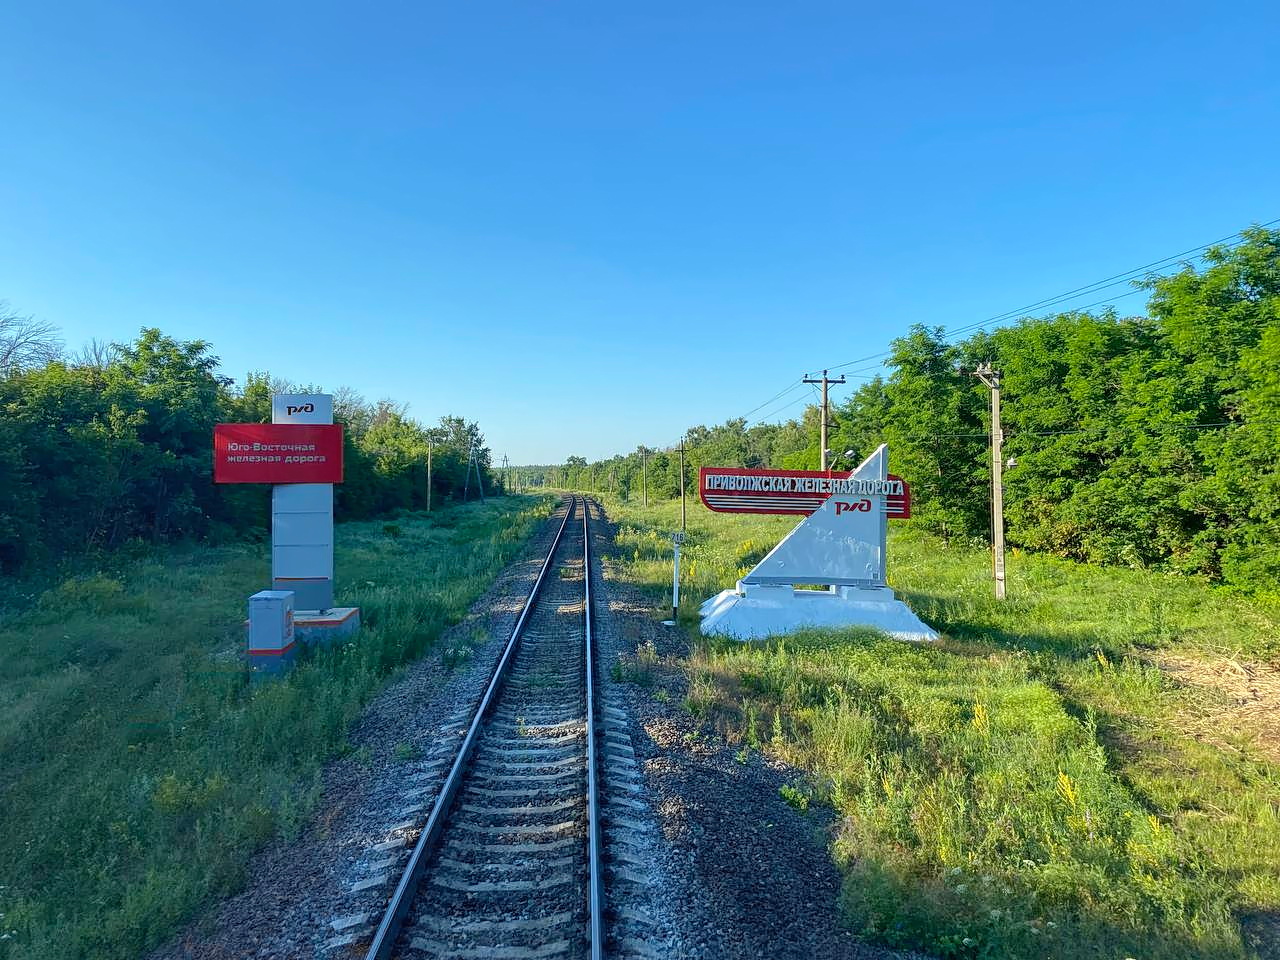 Jugoistočna željeznica — Stations & ways